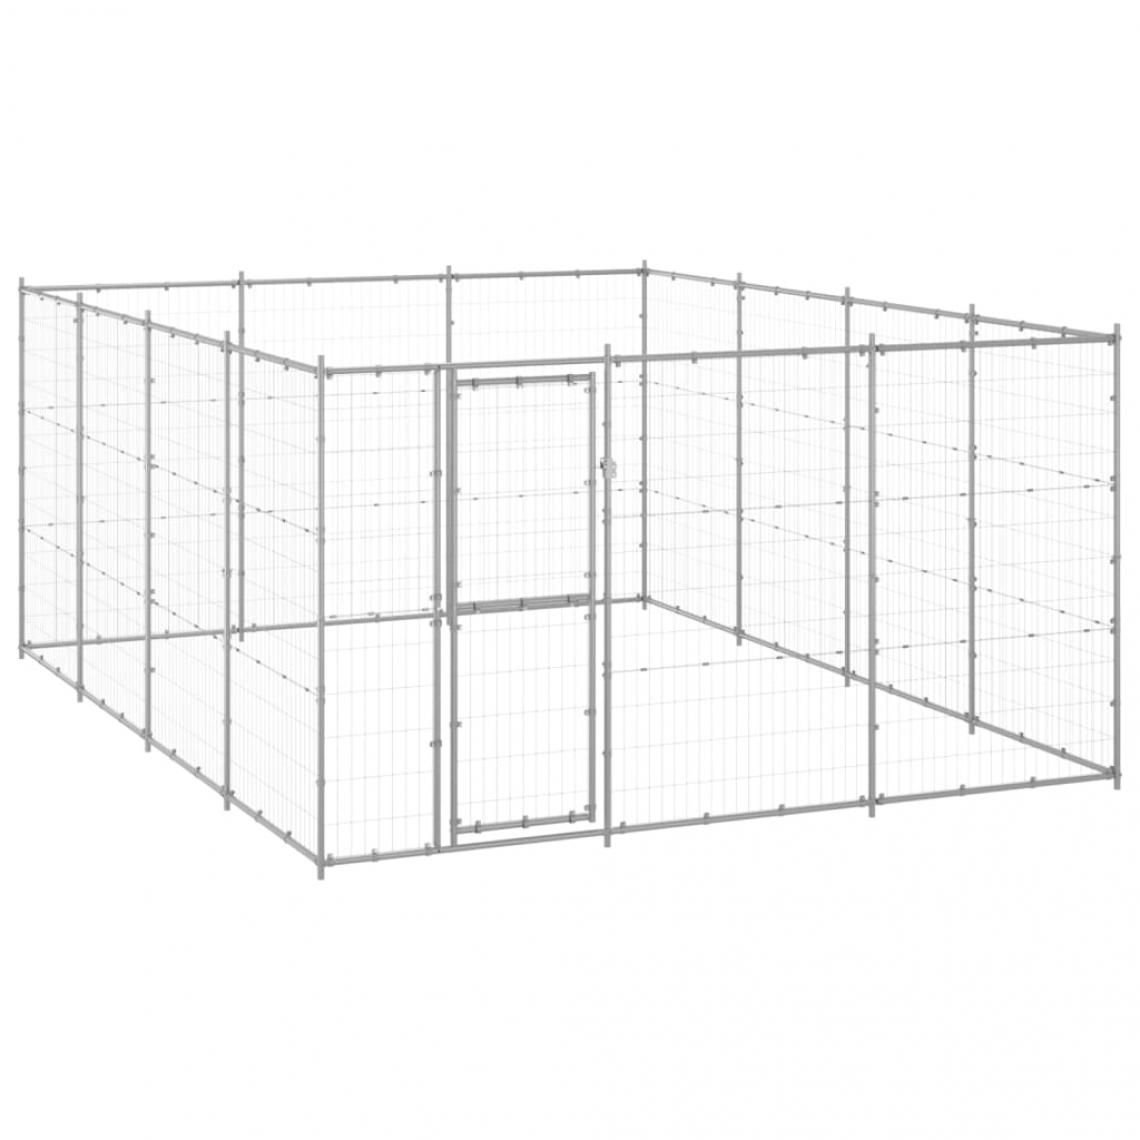 Helloshop26 - Chenil extérieur cage enclos parc animaux chien extérieur acier galvanisé 14,52 m² 02_0000408 - Clôture pour chien